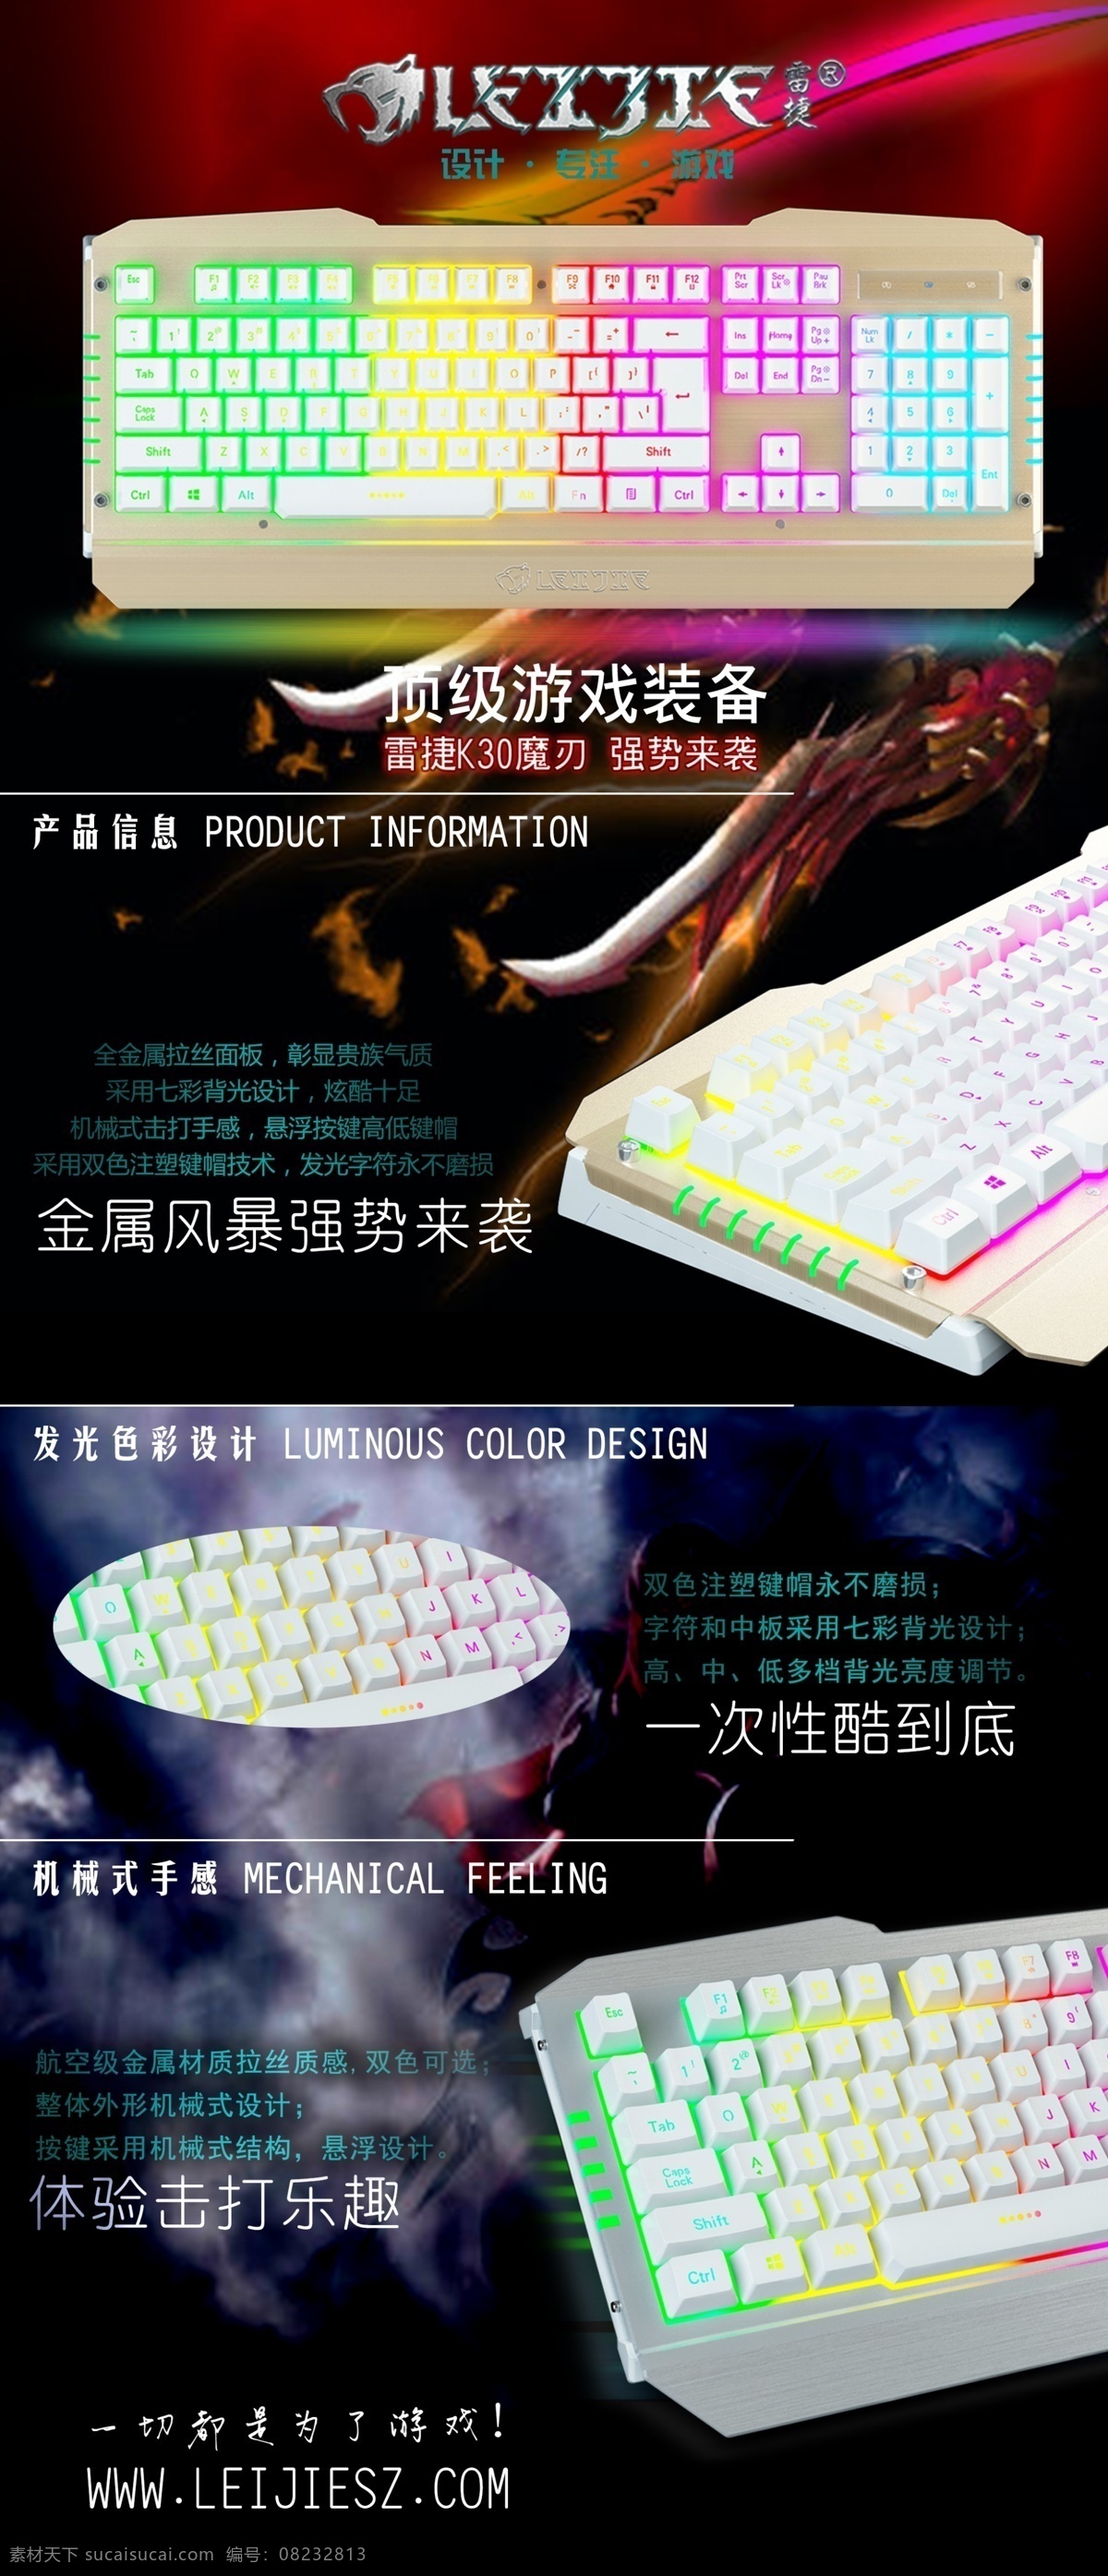 雷捷游戏键盘 淘宝详情 海报 宣传单 游戏键盘 电竞键盘 游戏 黑色